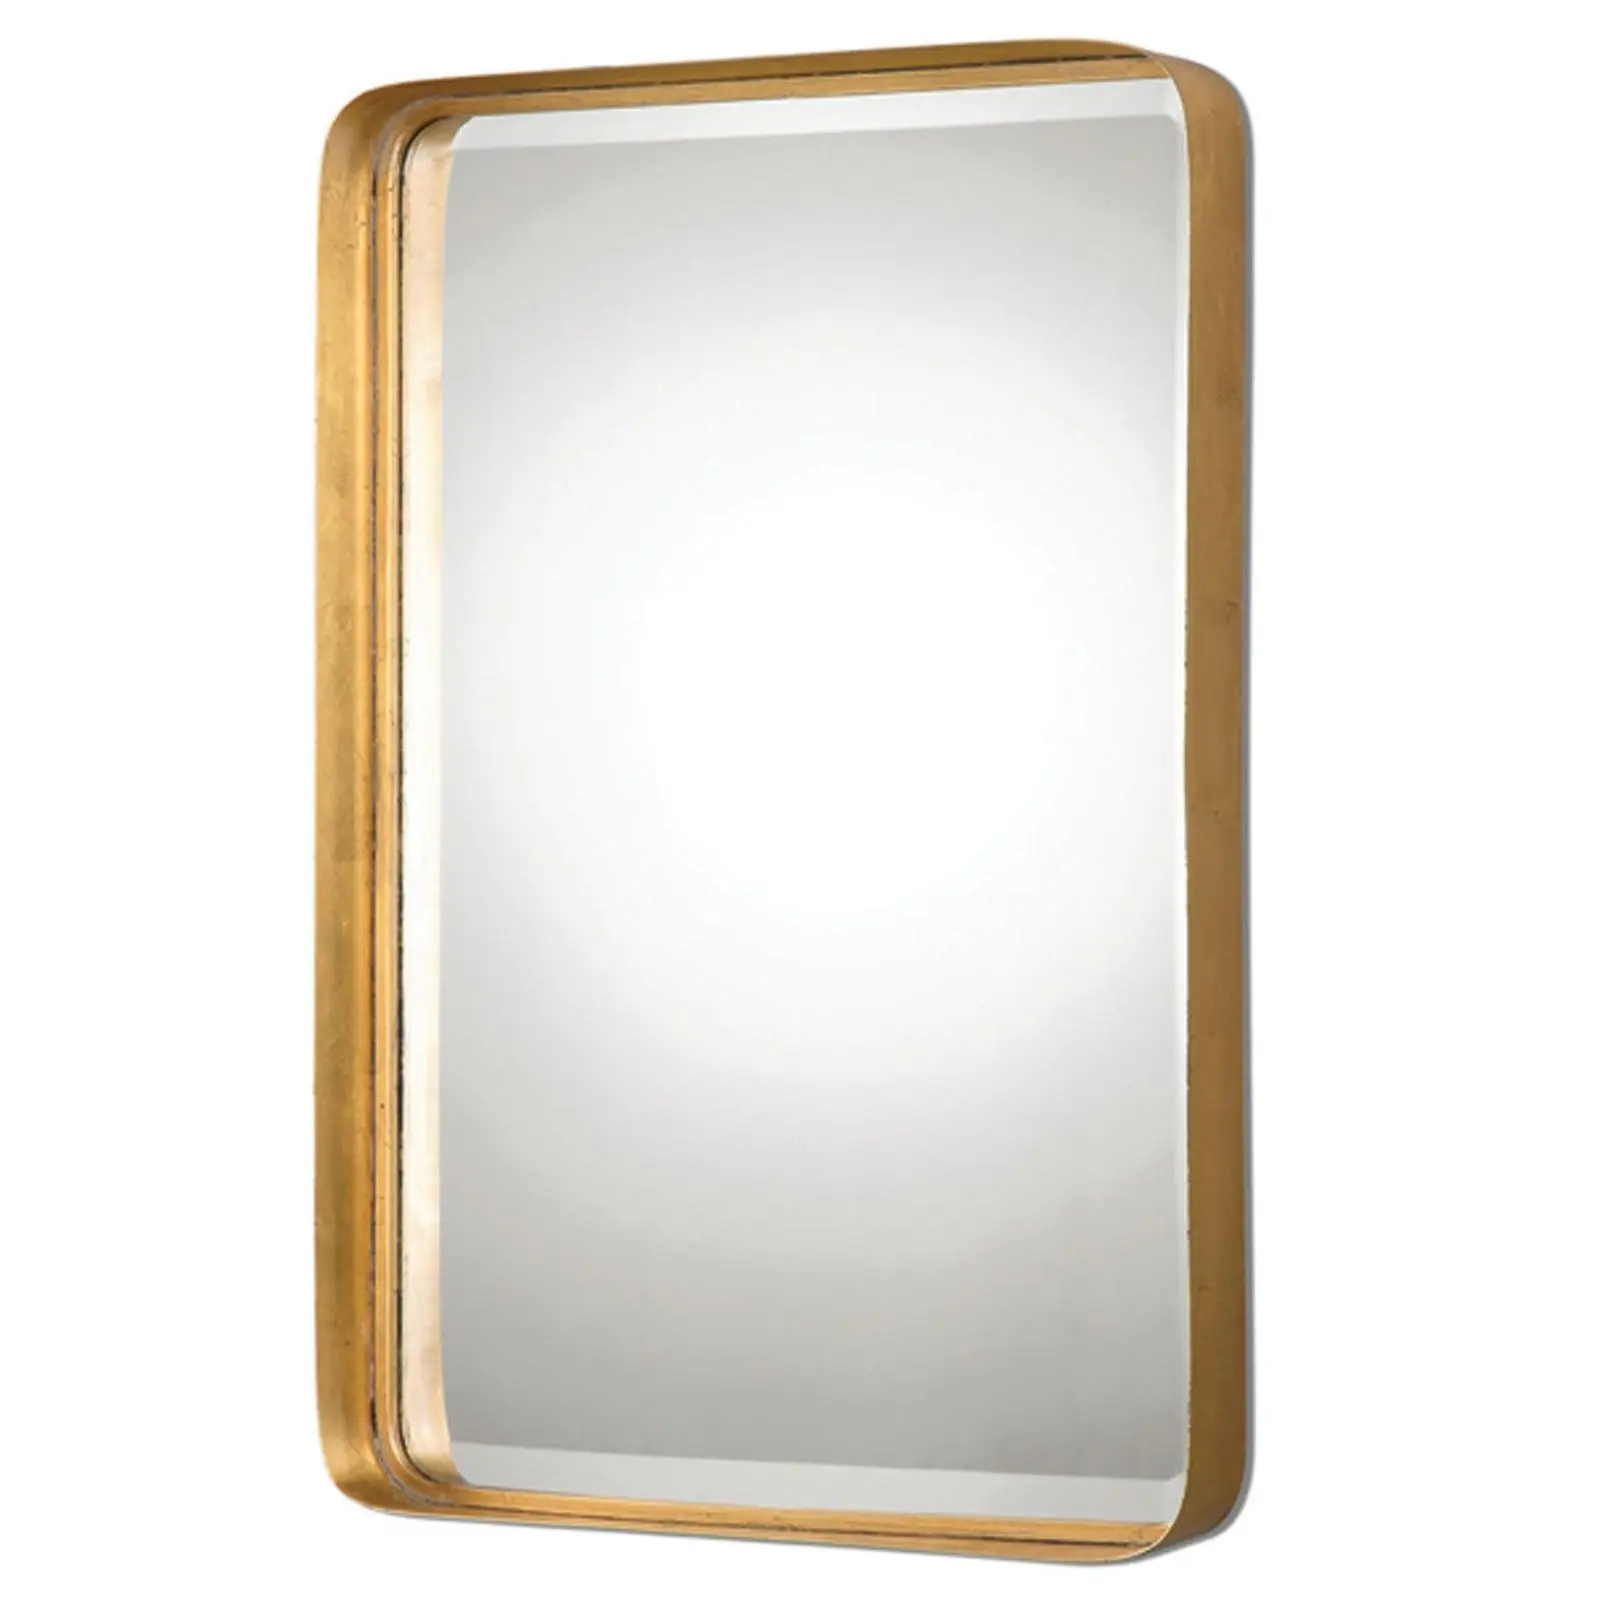 Зеркало в рамке в ванной. 17-6604gold зеркало диам.80 см_s2. Зеркало в ванну прямоугольное. Рамка для зеркала. Зеркало с металлической рамкой.